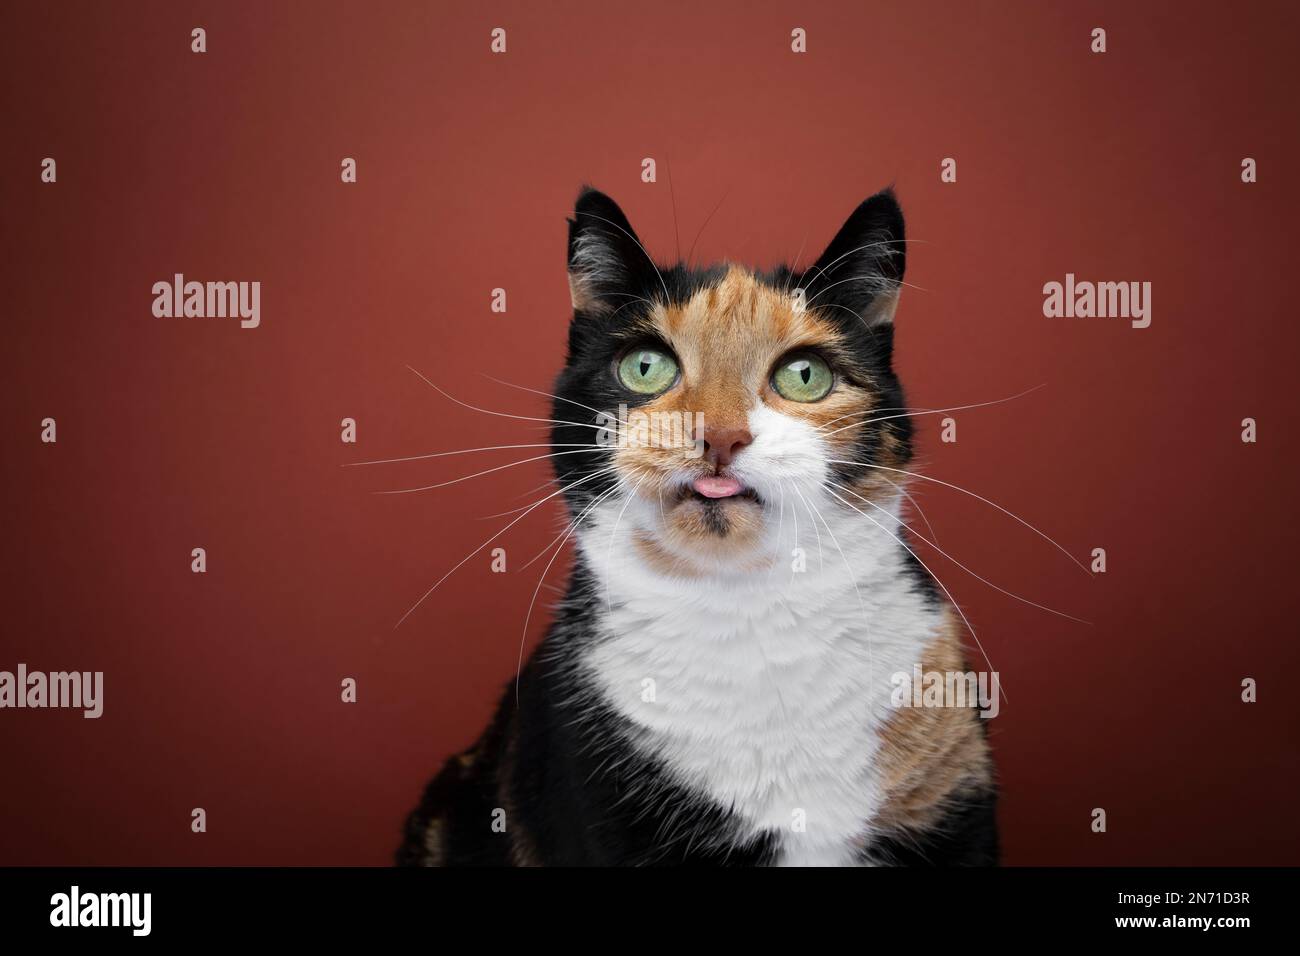 Grosse Calico Cat qui colle à la langue, ce qui rend le visage amusant. Portrait de studio sur fond rouge avec espace de copie Banque D'Images